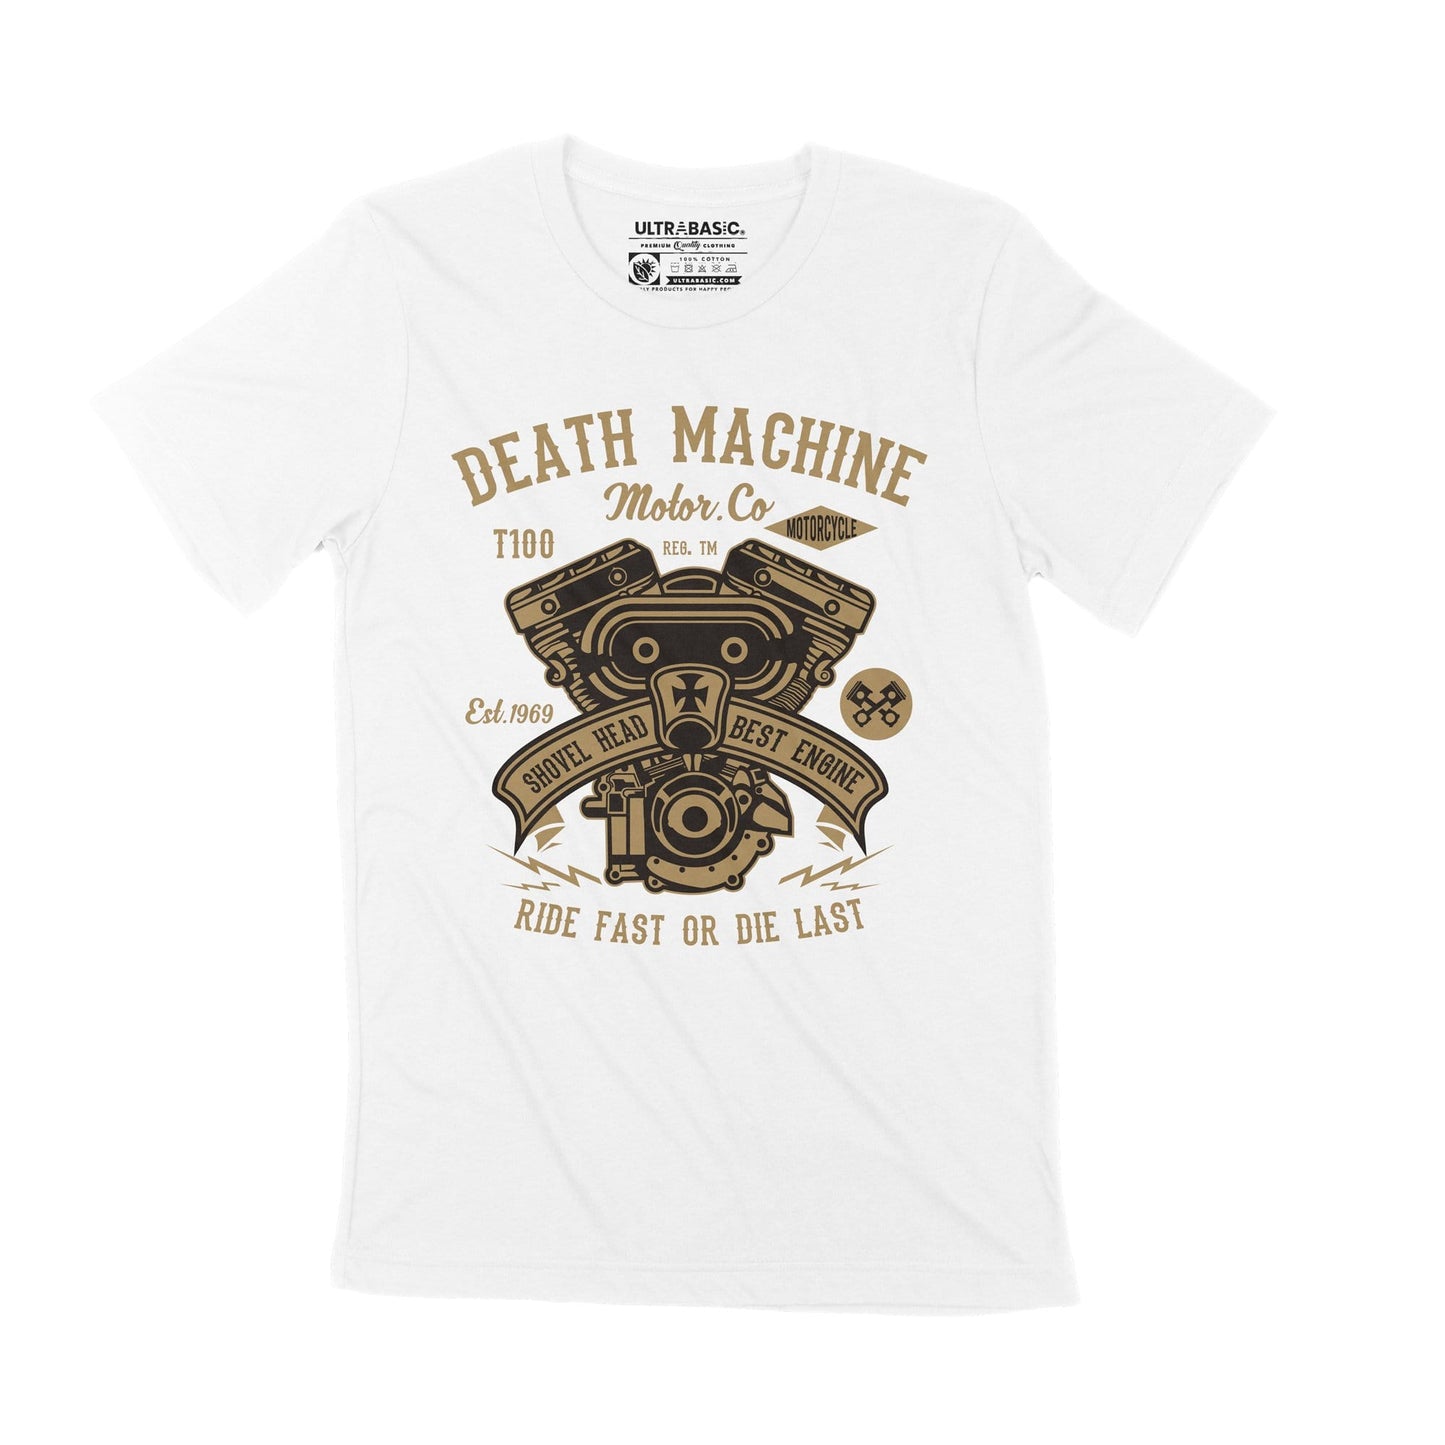 ULTRABASIC Herren T-Shirt Death Machine – Ride Fast or Die Last – Biker seit 1969